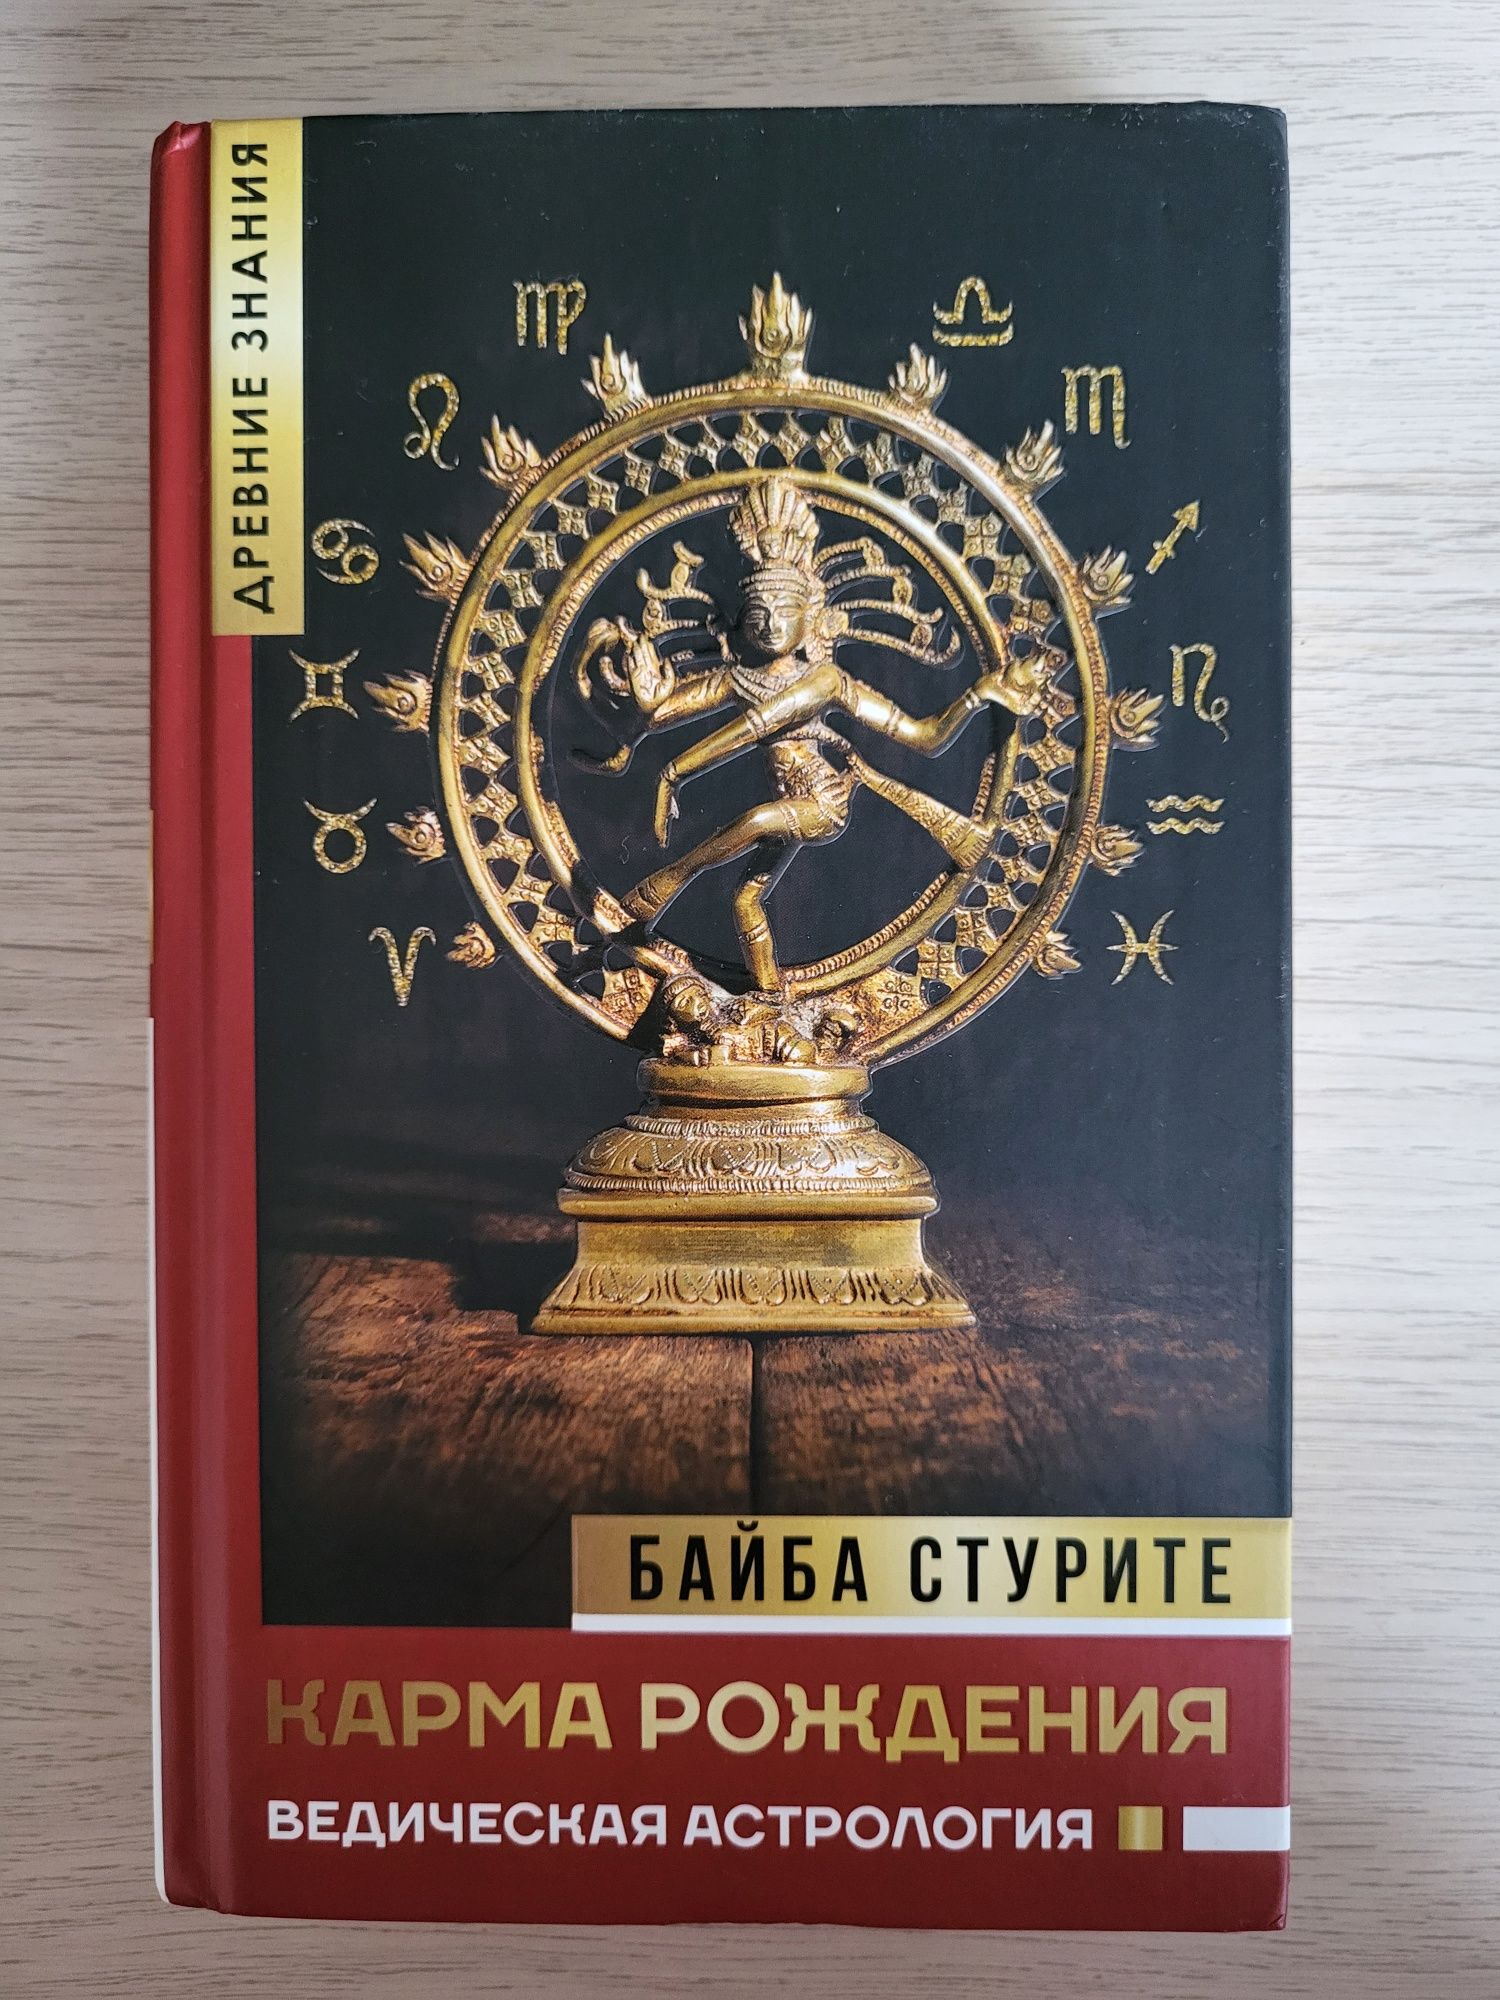 Книга "Карма рождения. Ведическая астрология", Байба Стурите